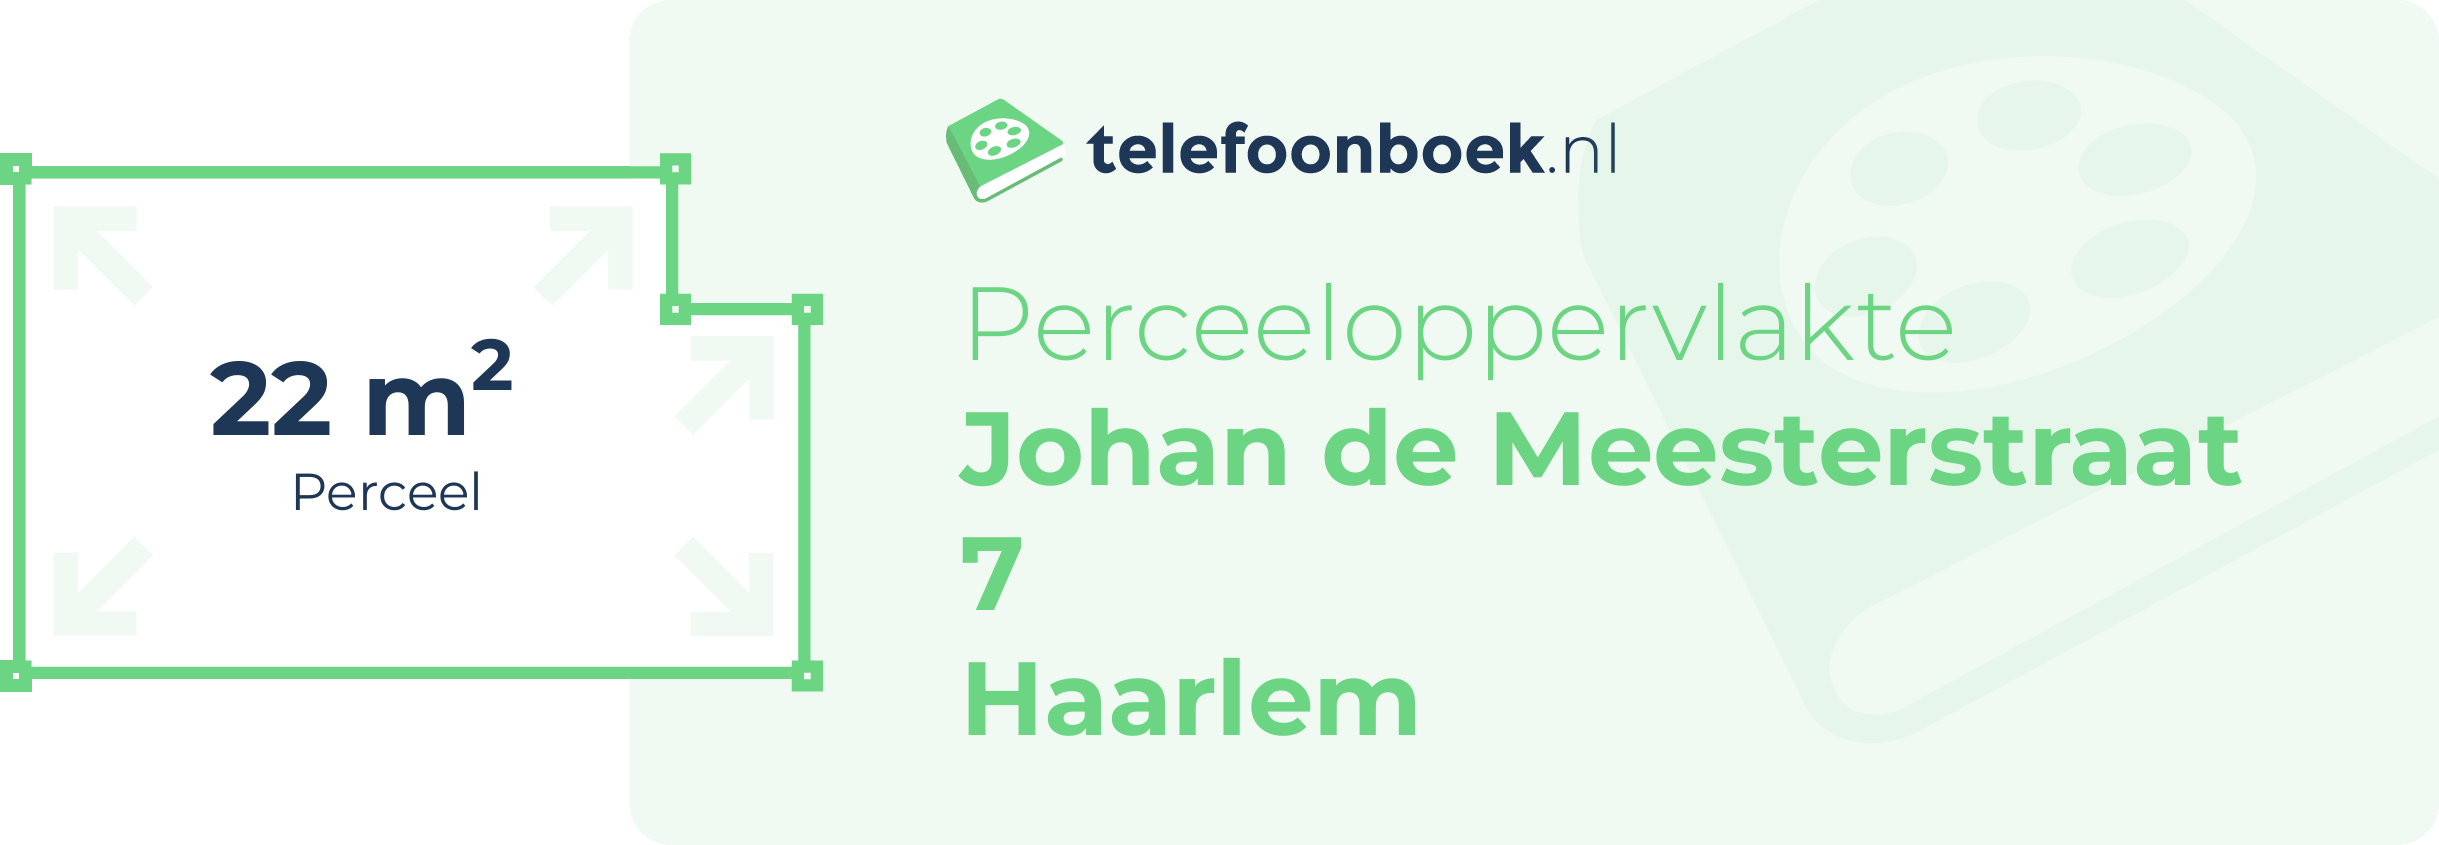 Perceeloppervlakte Johan De Meesterstraat 7 Haarlem